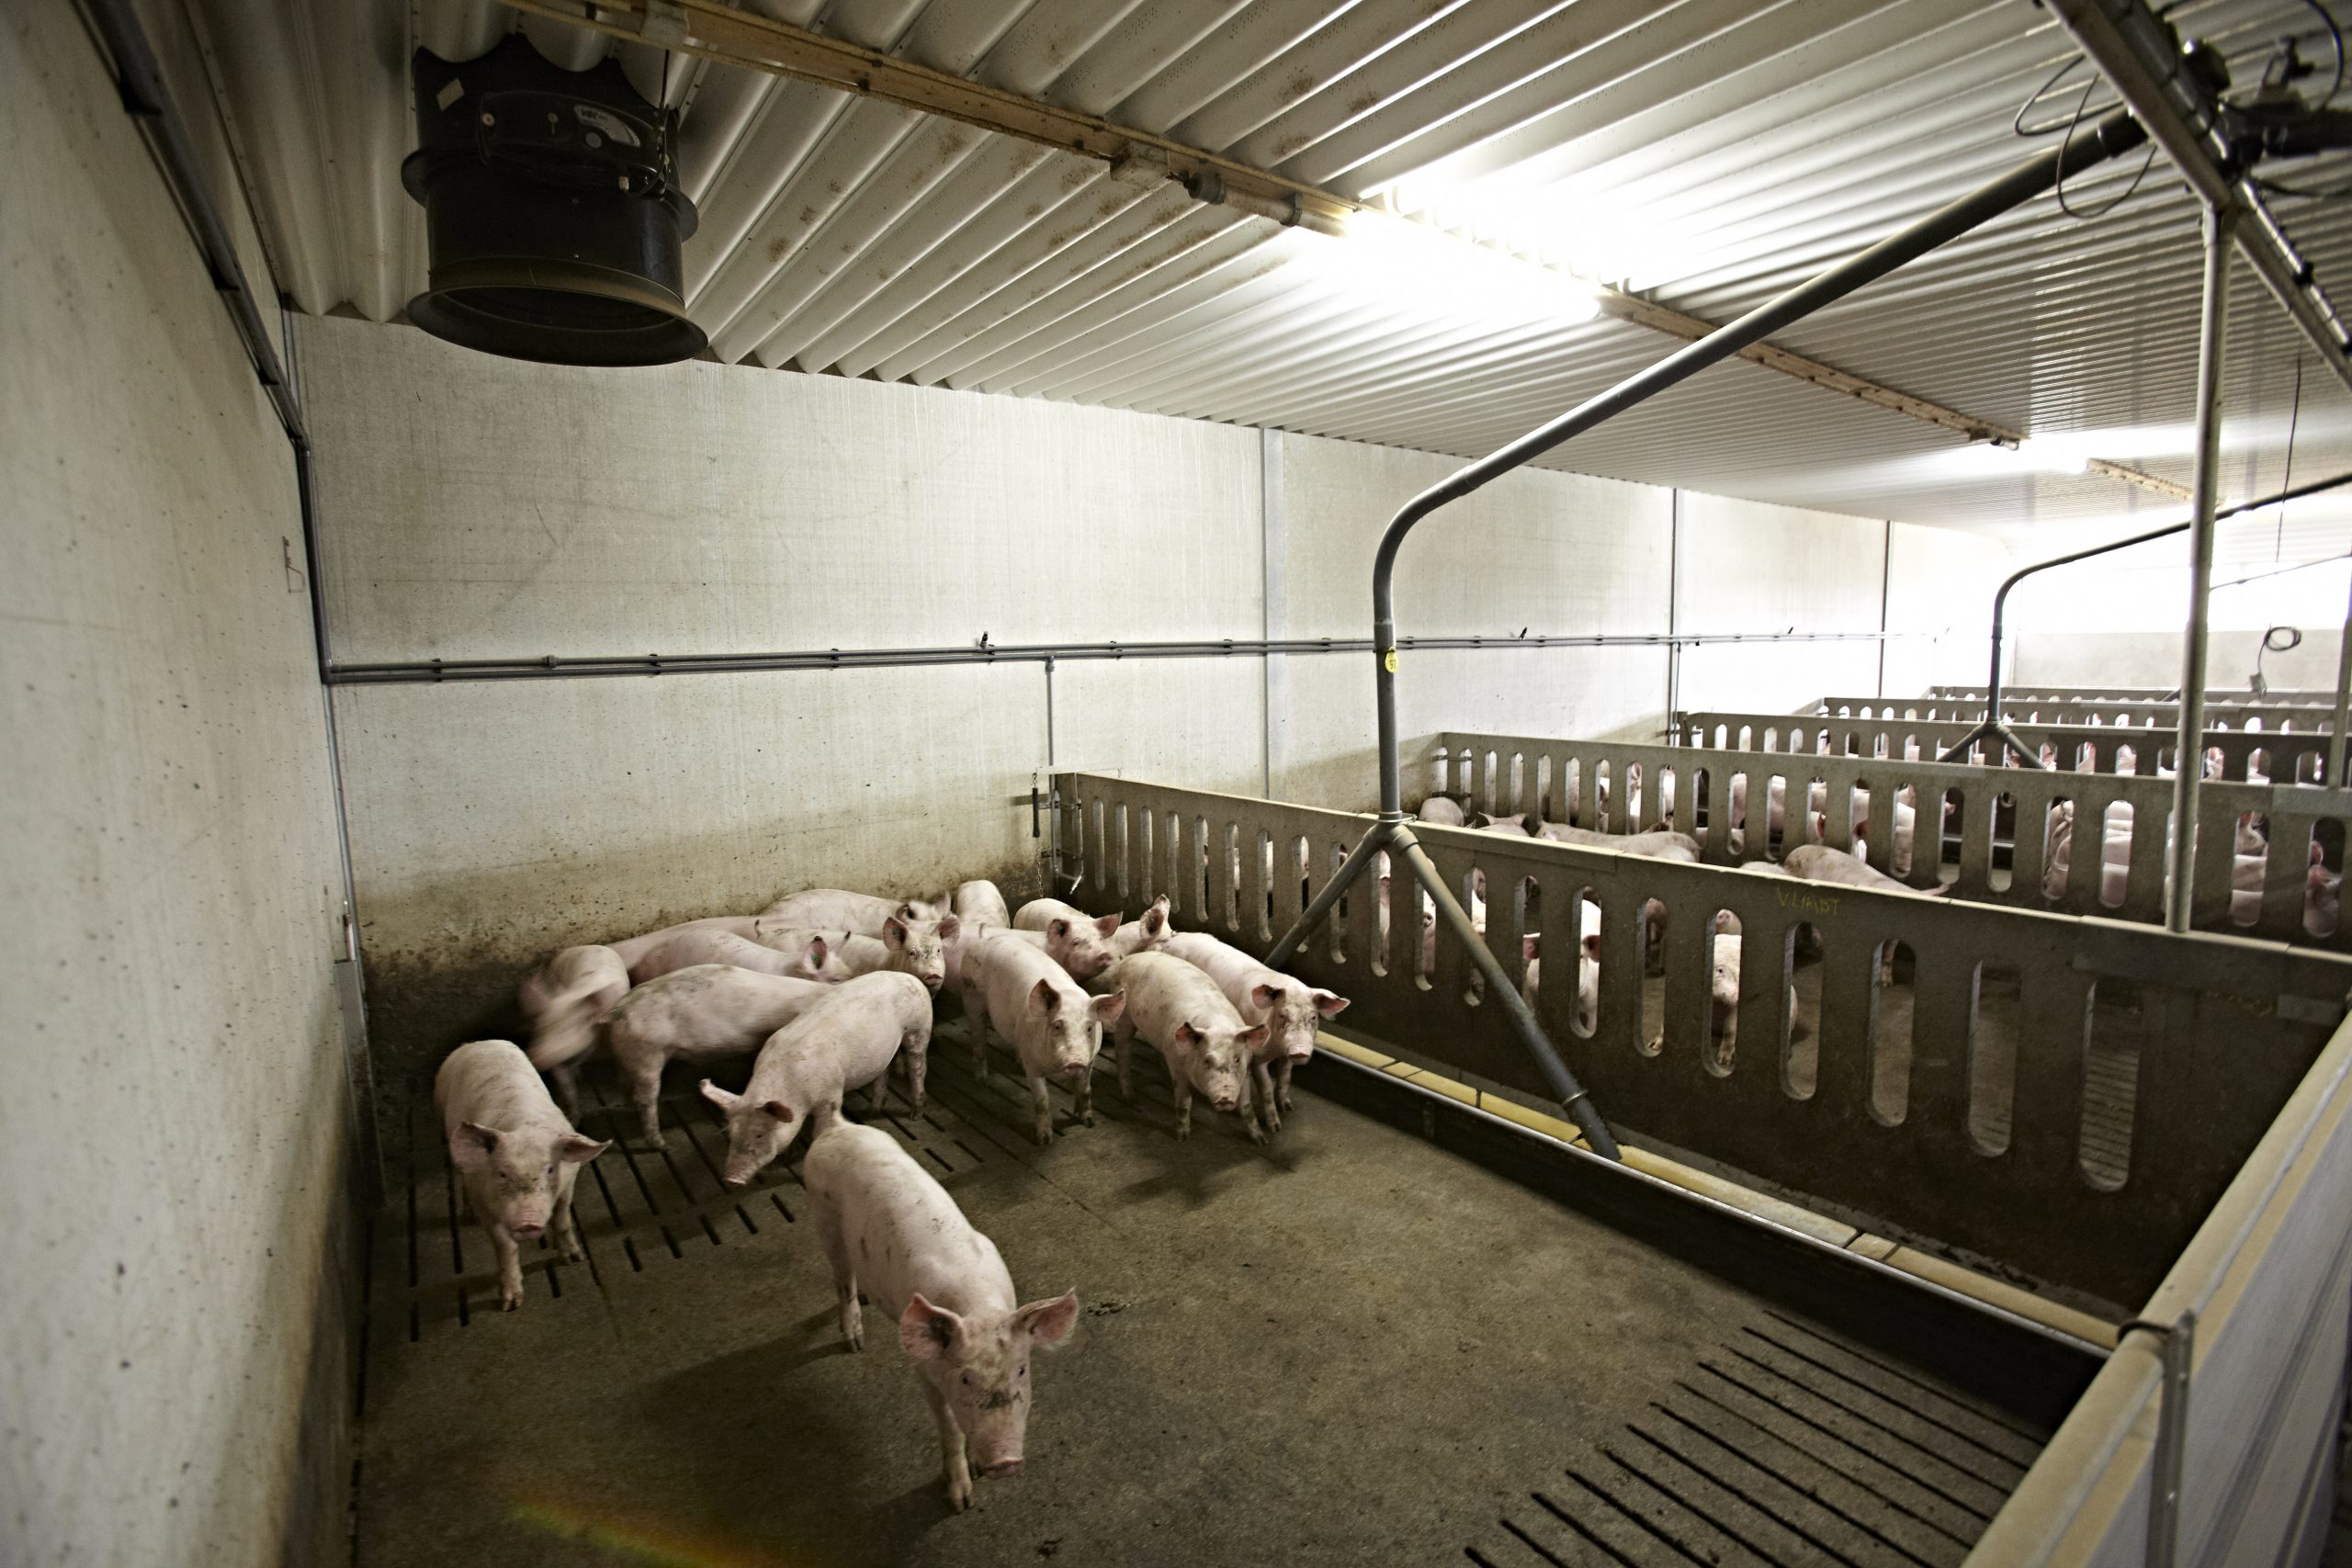 Nederlandse diervoedersector loopt voorop in gebruik duurzame soja